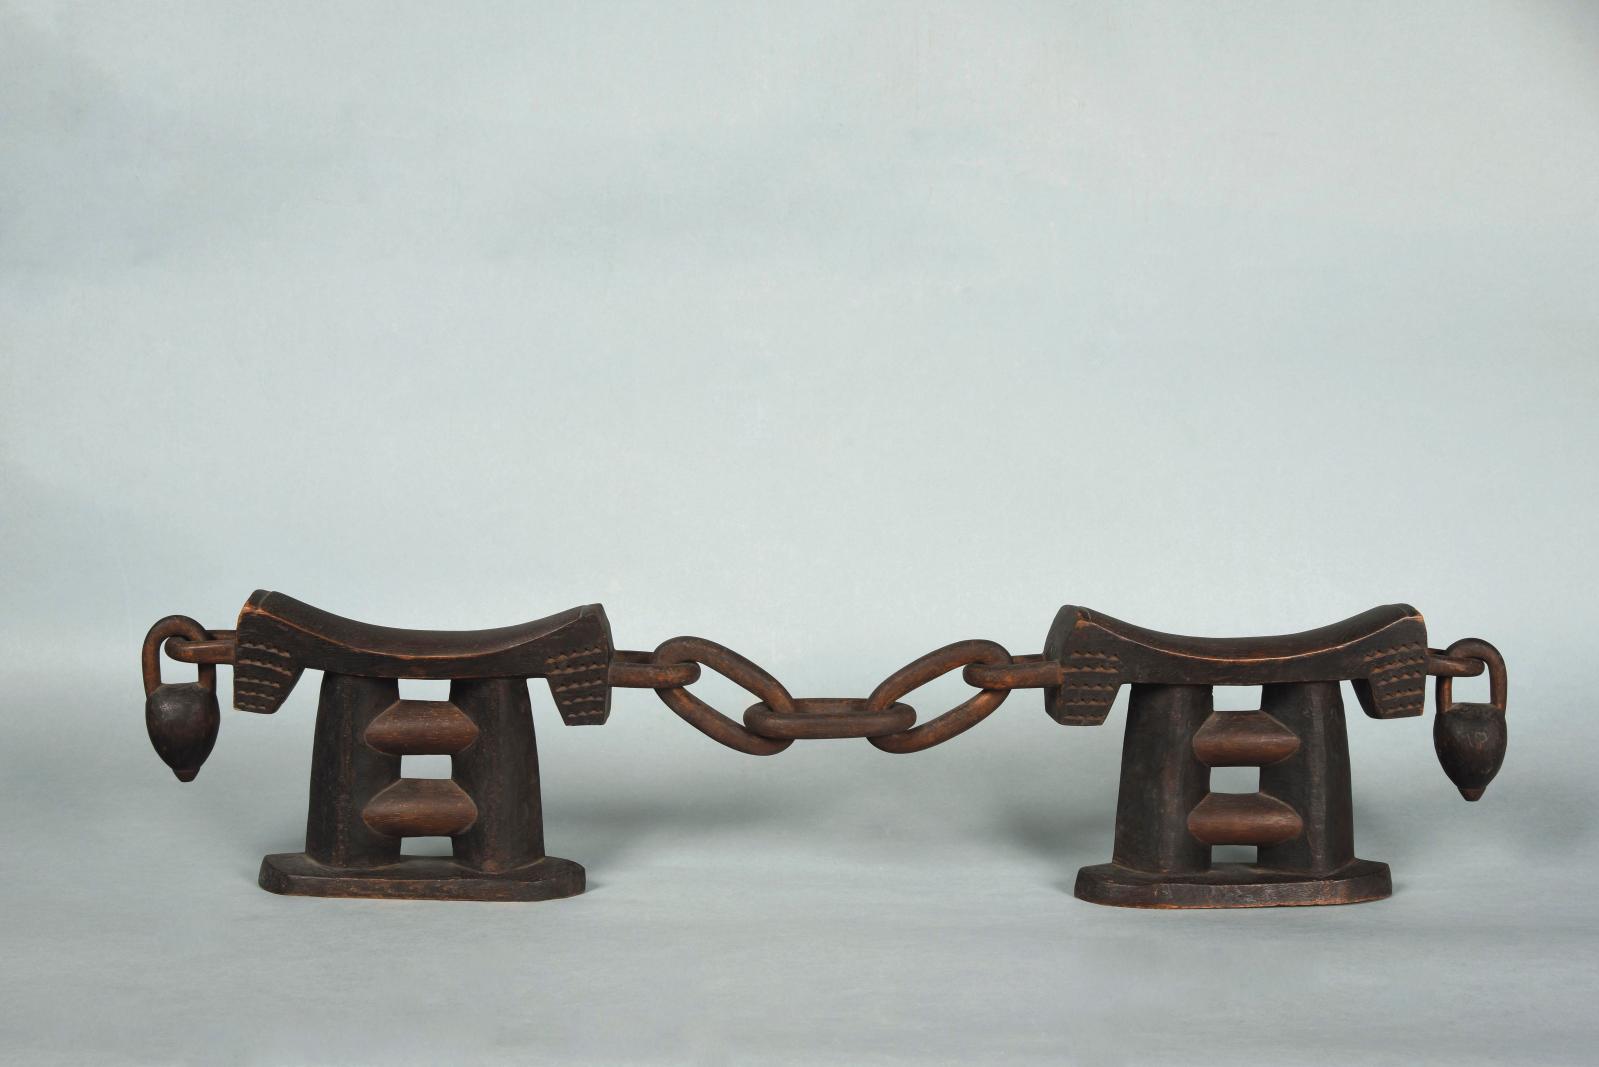 Tsonga (ethnie), deux appuis-tête pour un couple, Reims, musée Saint-Remi. 